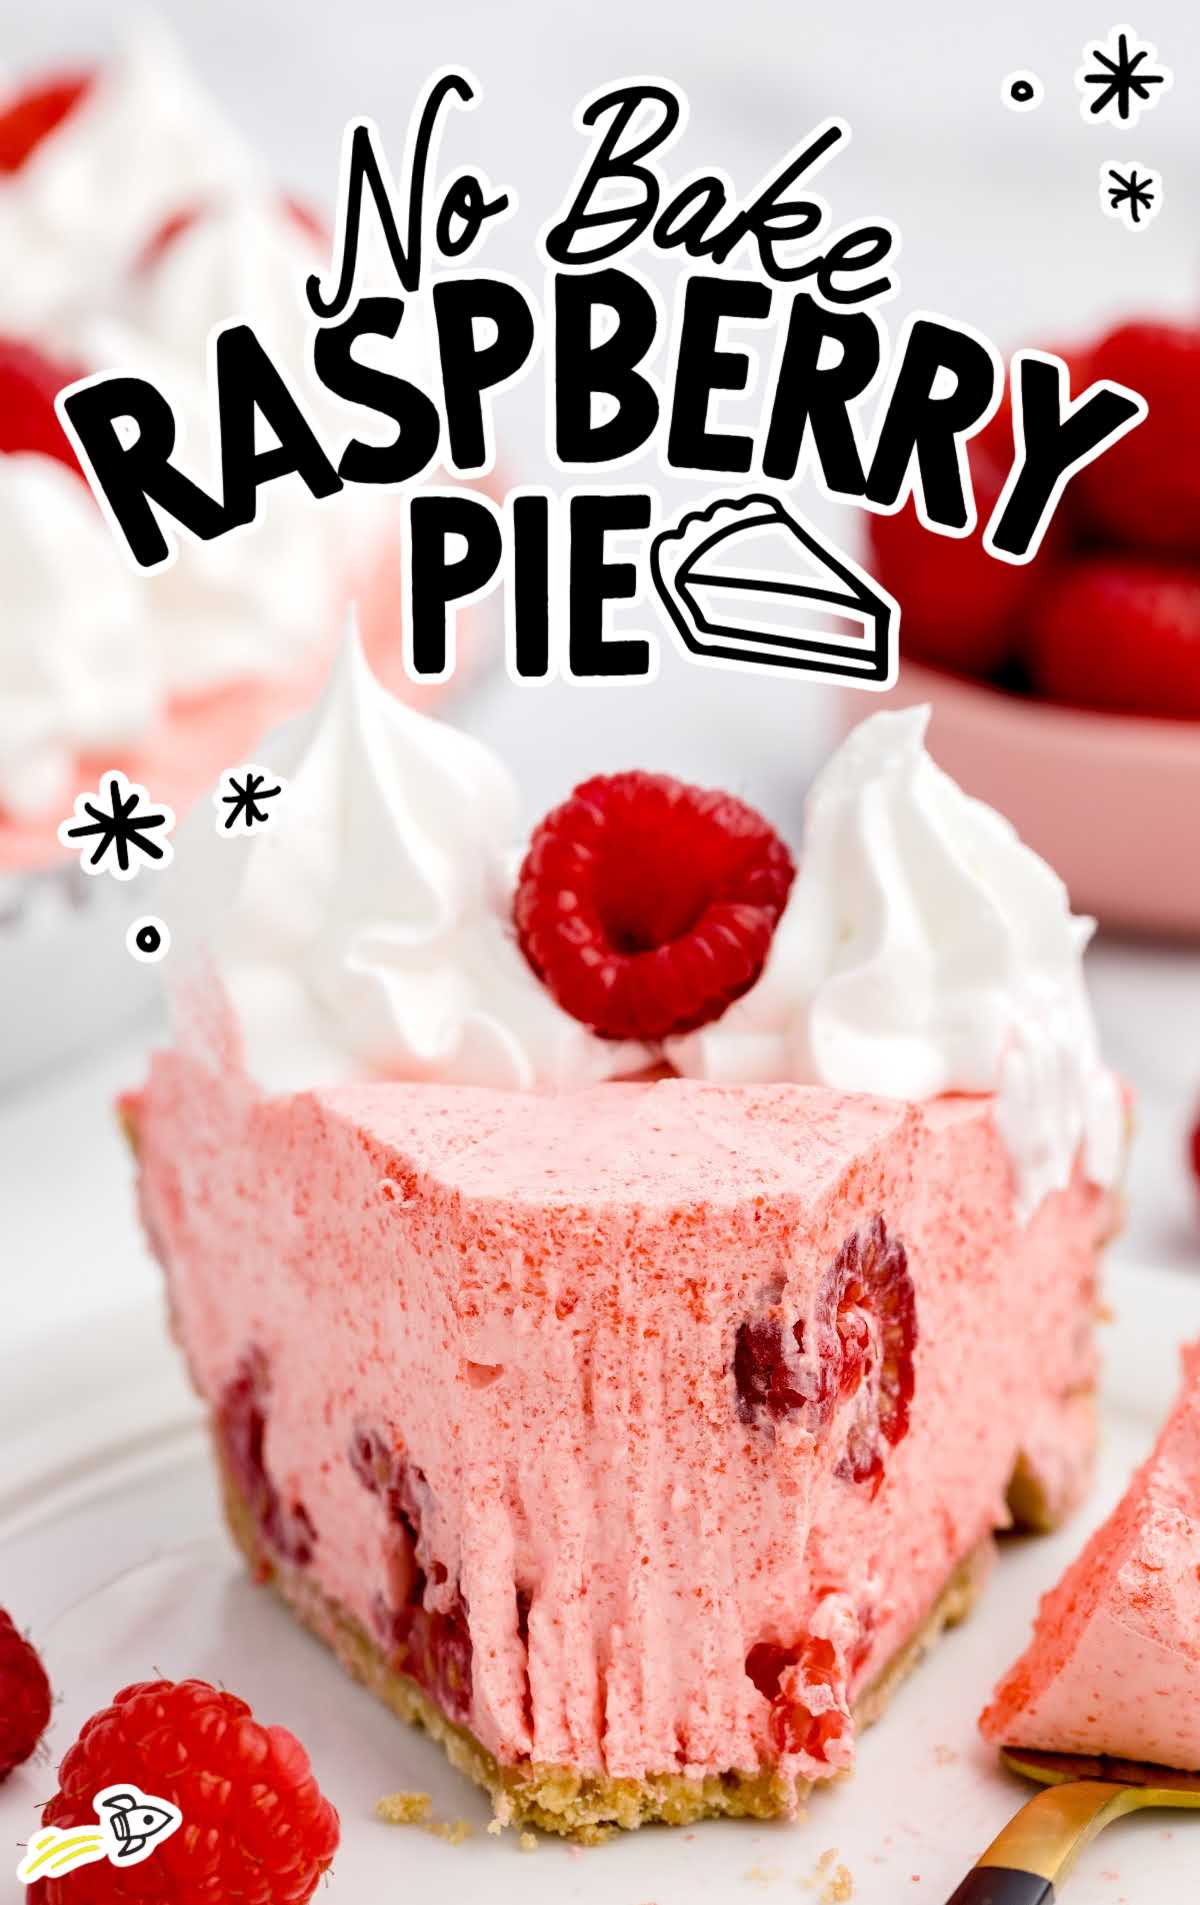 a close up shot of a slice of No Bake Raspberry Pie